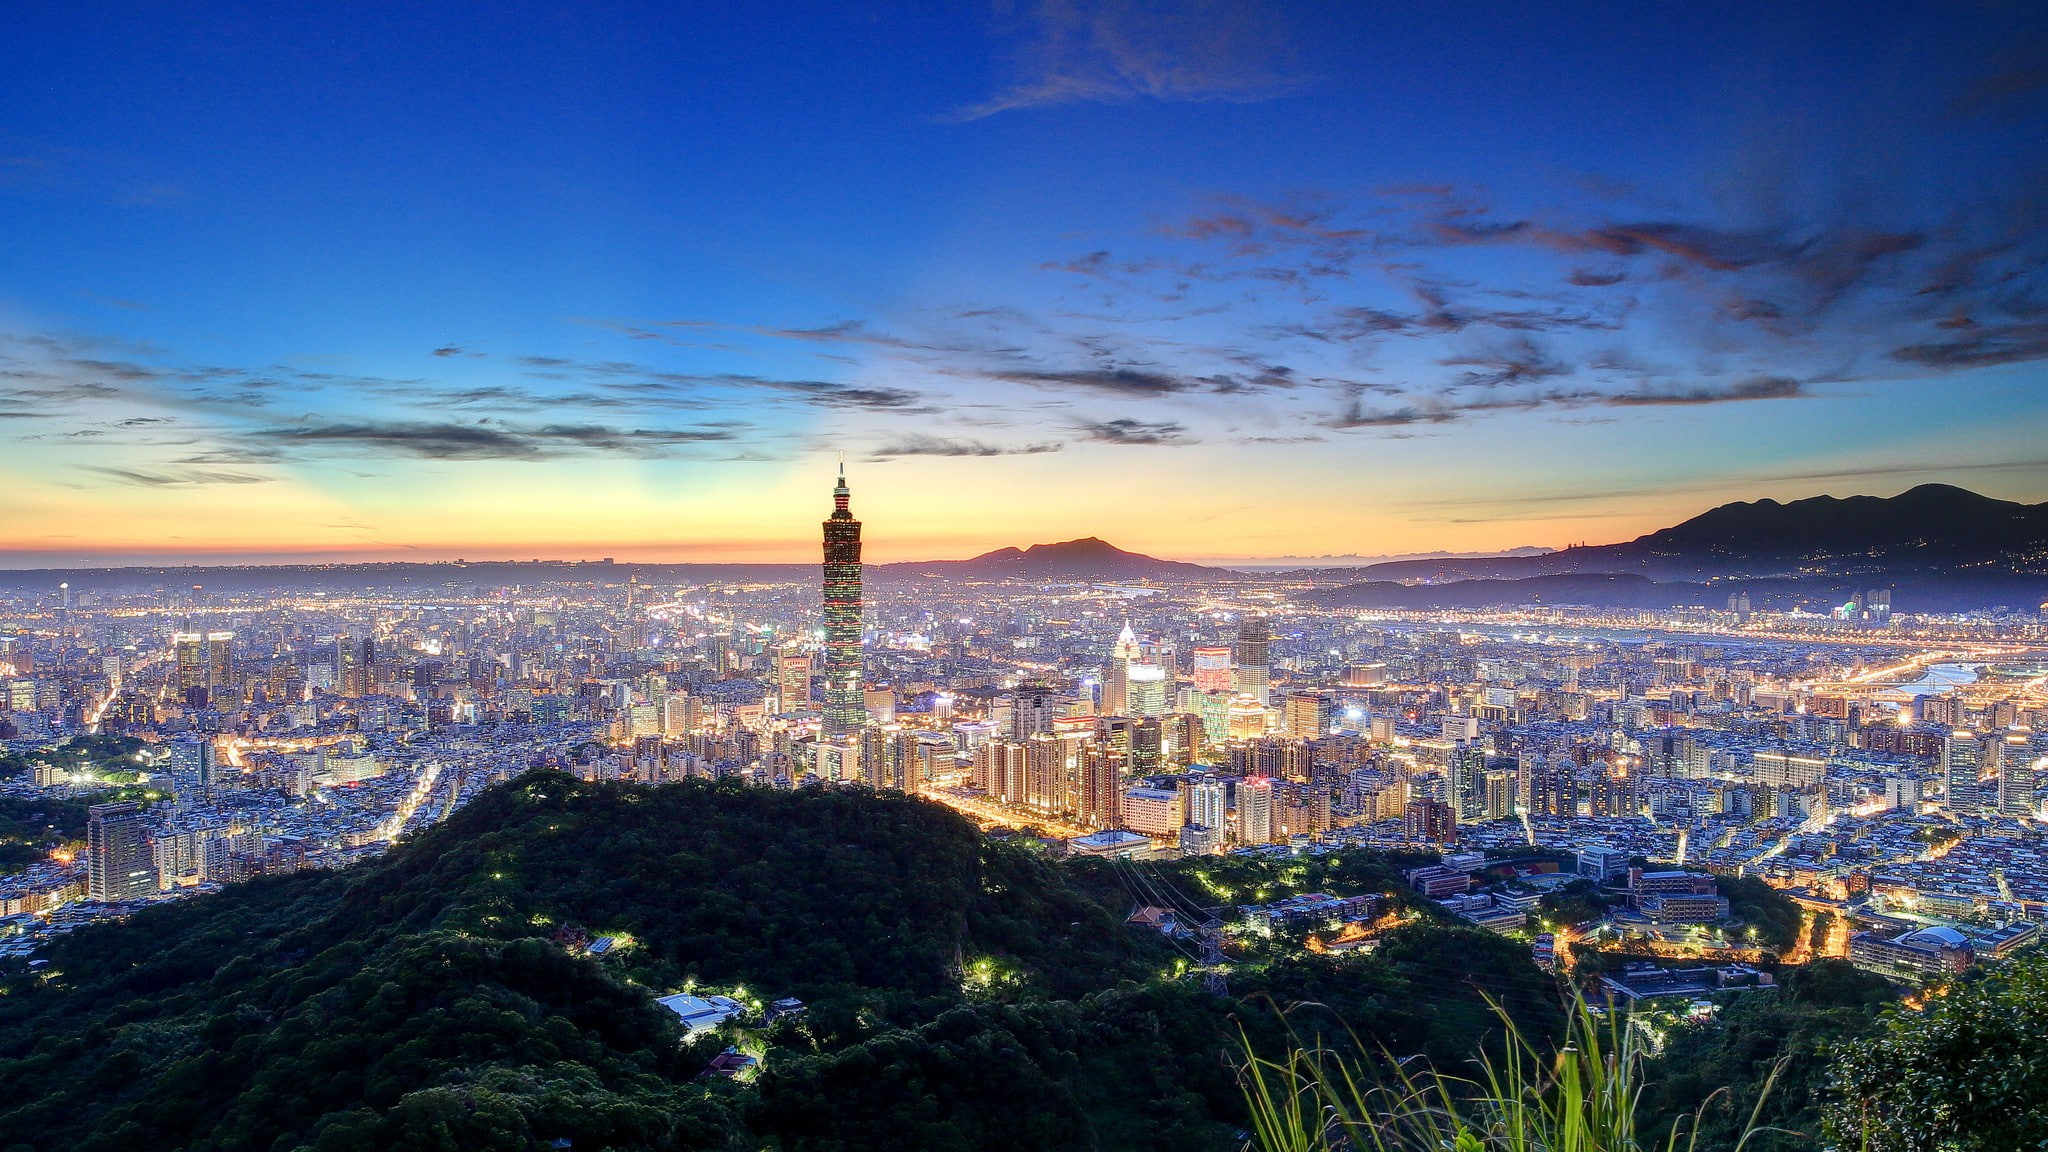 Taipei, Taiwan, China, concrete high rise building, night city skyline